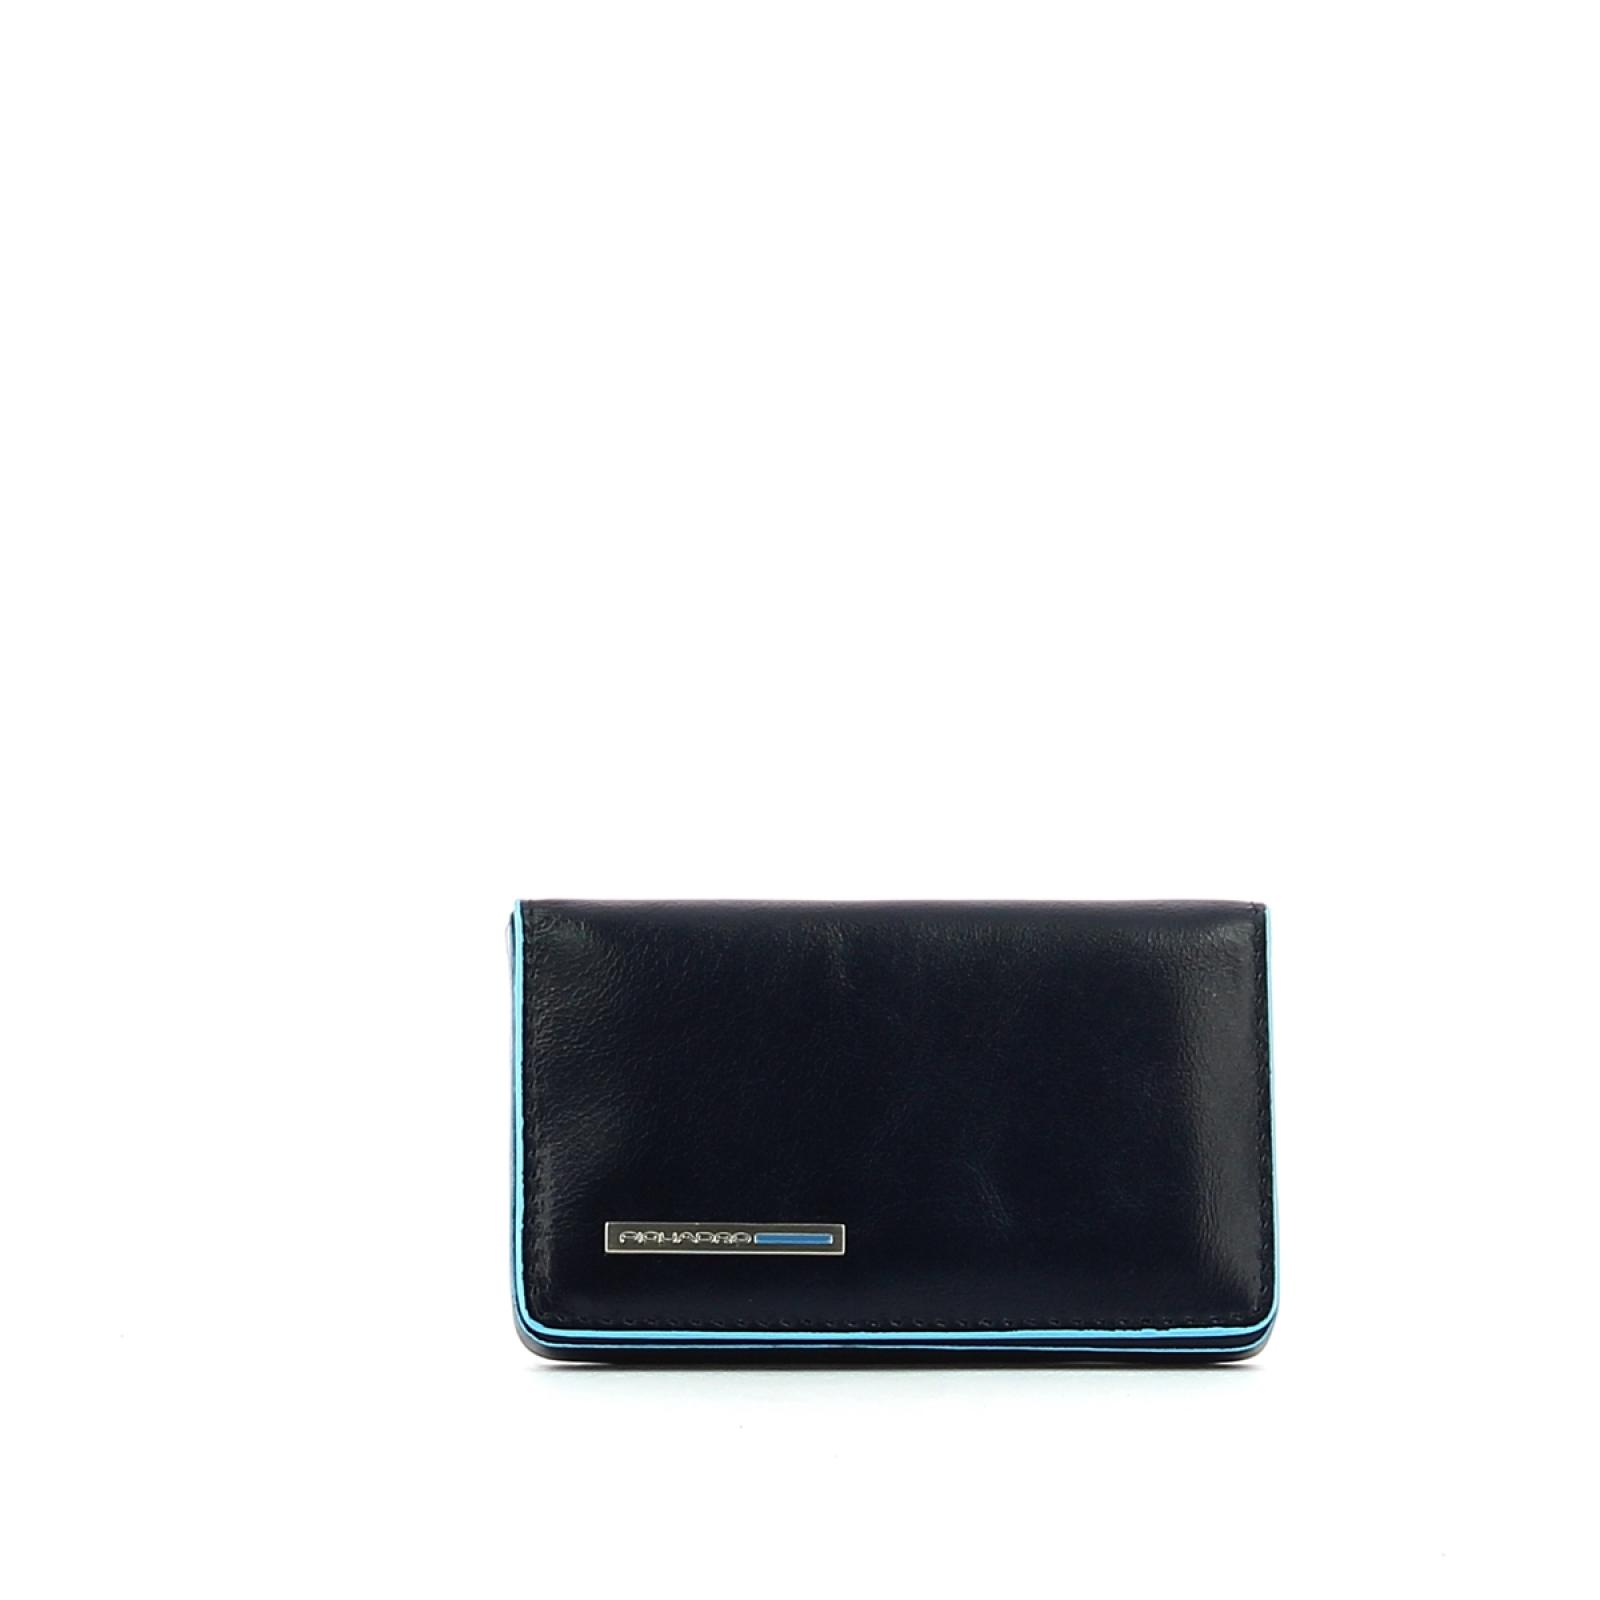 Business card holder Blue Square-BLU2-UN